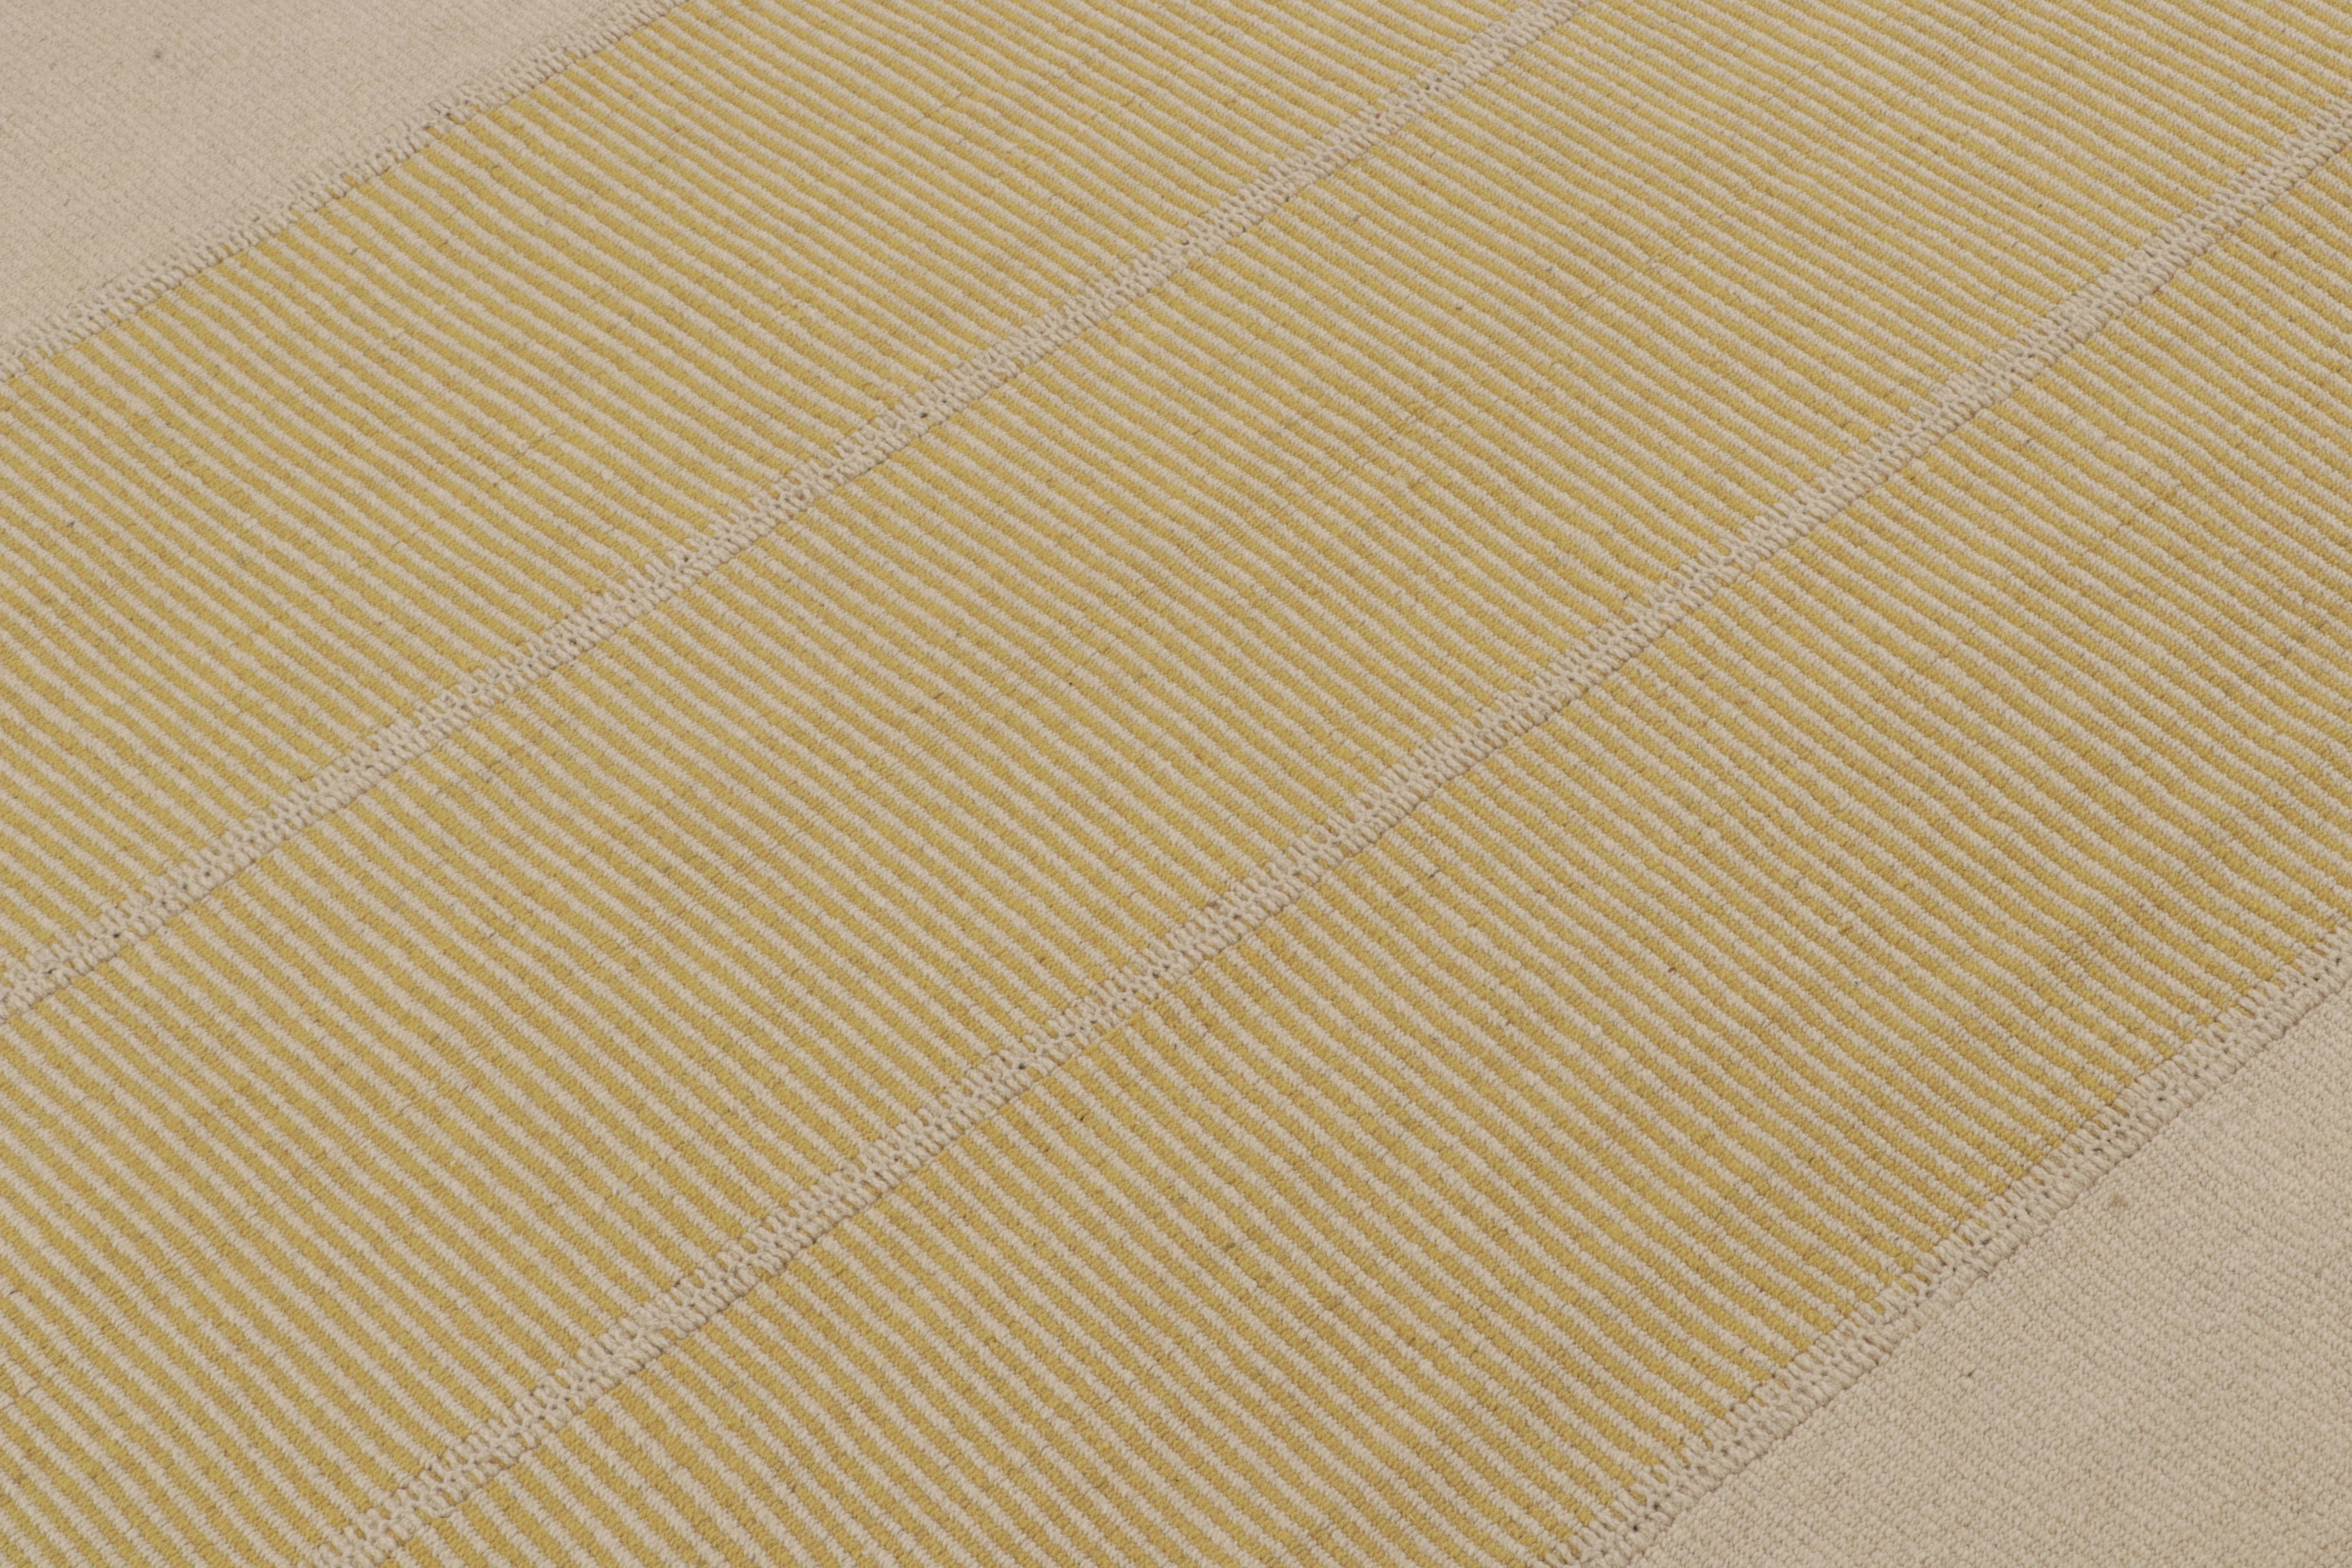 Tissé à la main en laine, ce kilim 8x10 fait partie d'une nouvelle ligne audacieuse de tissages plats contemporains de Rug & Kilim.

Sur le Design : 

Connotant une version moderne du tissage de panneaux classique, notre dernier 